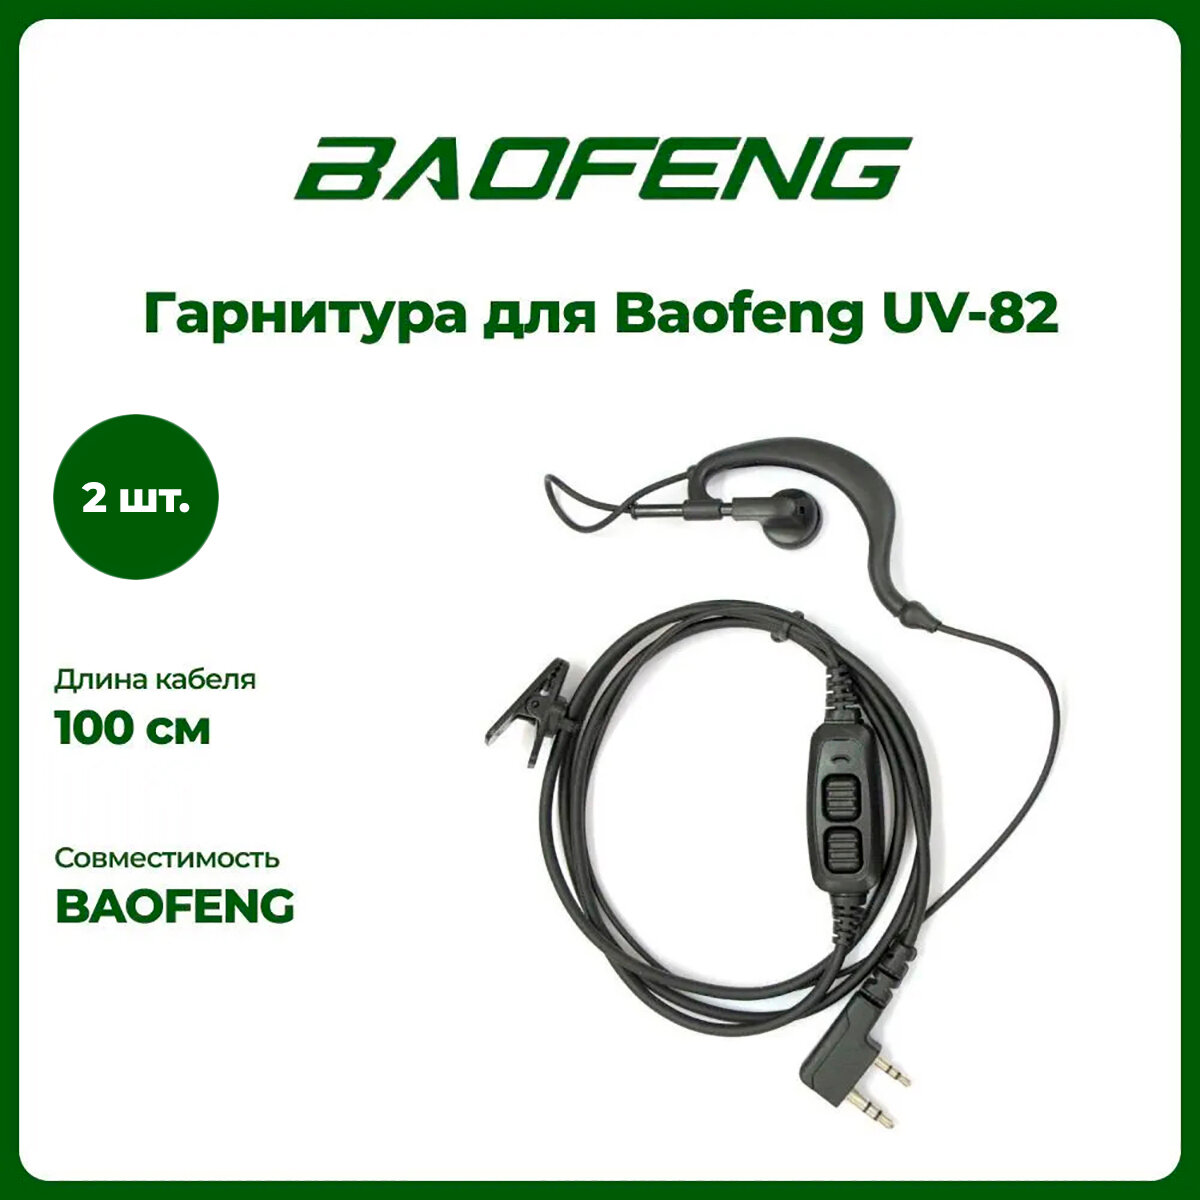 Гарнитура штатная для рации Baofeng UV-82 комплект 2 шт